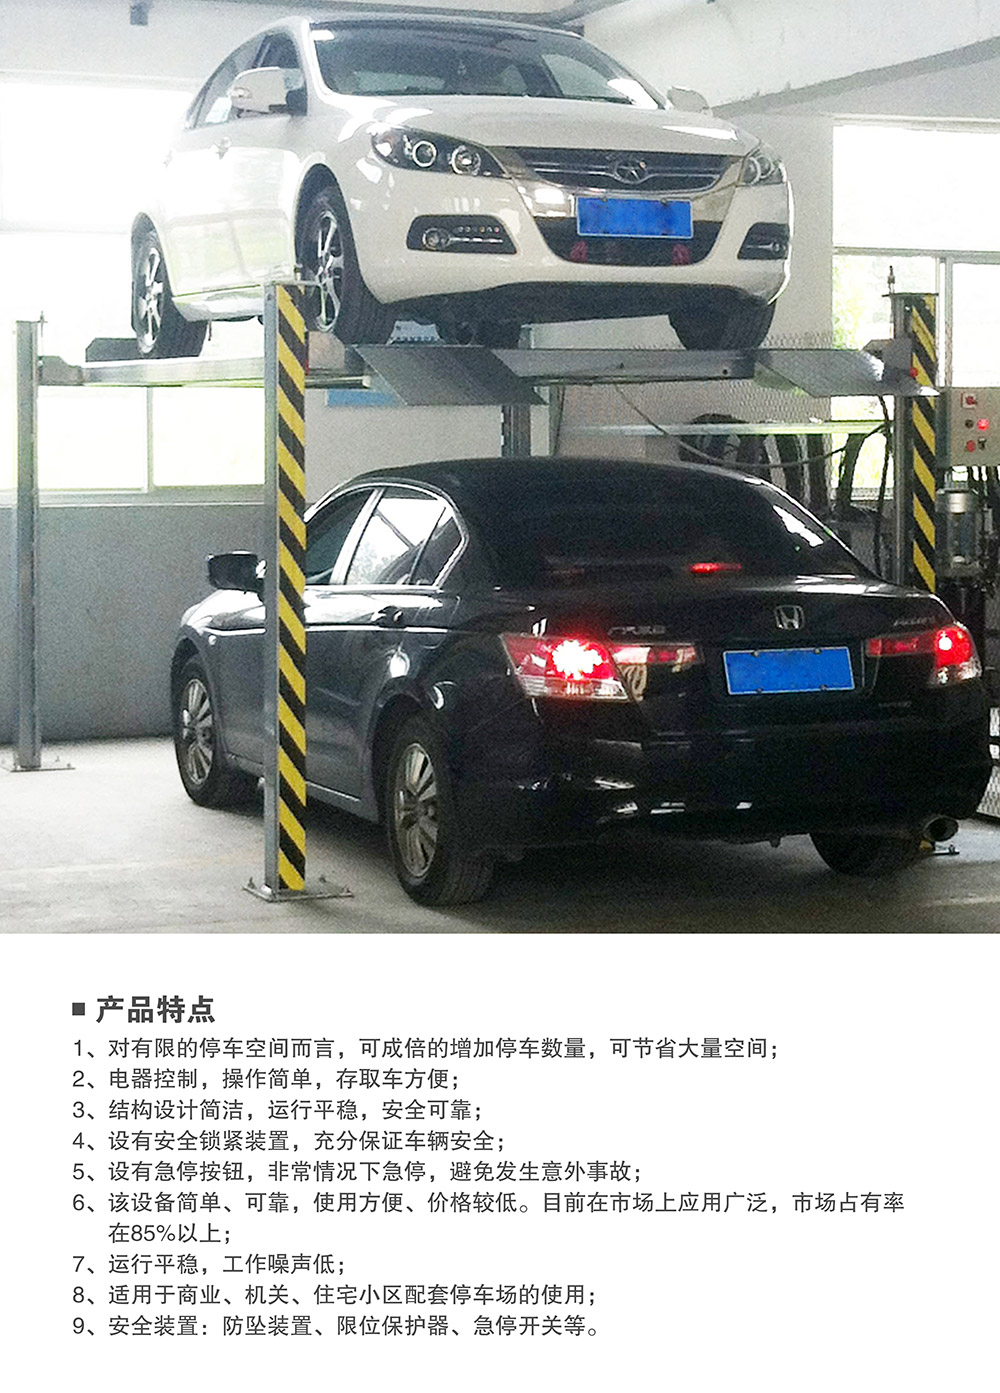 贵州贵阳四柱简易升降立体停车设备产品特点.jpg